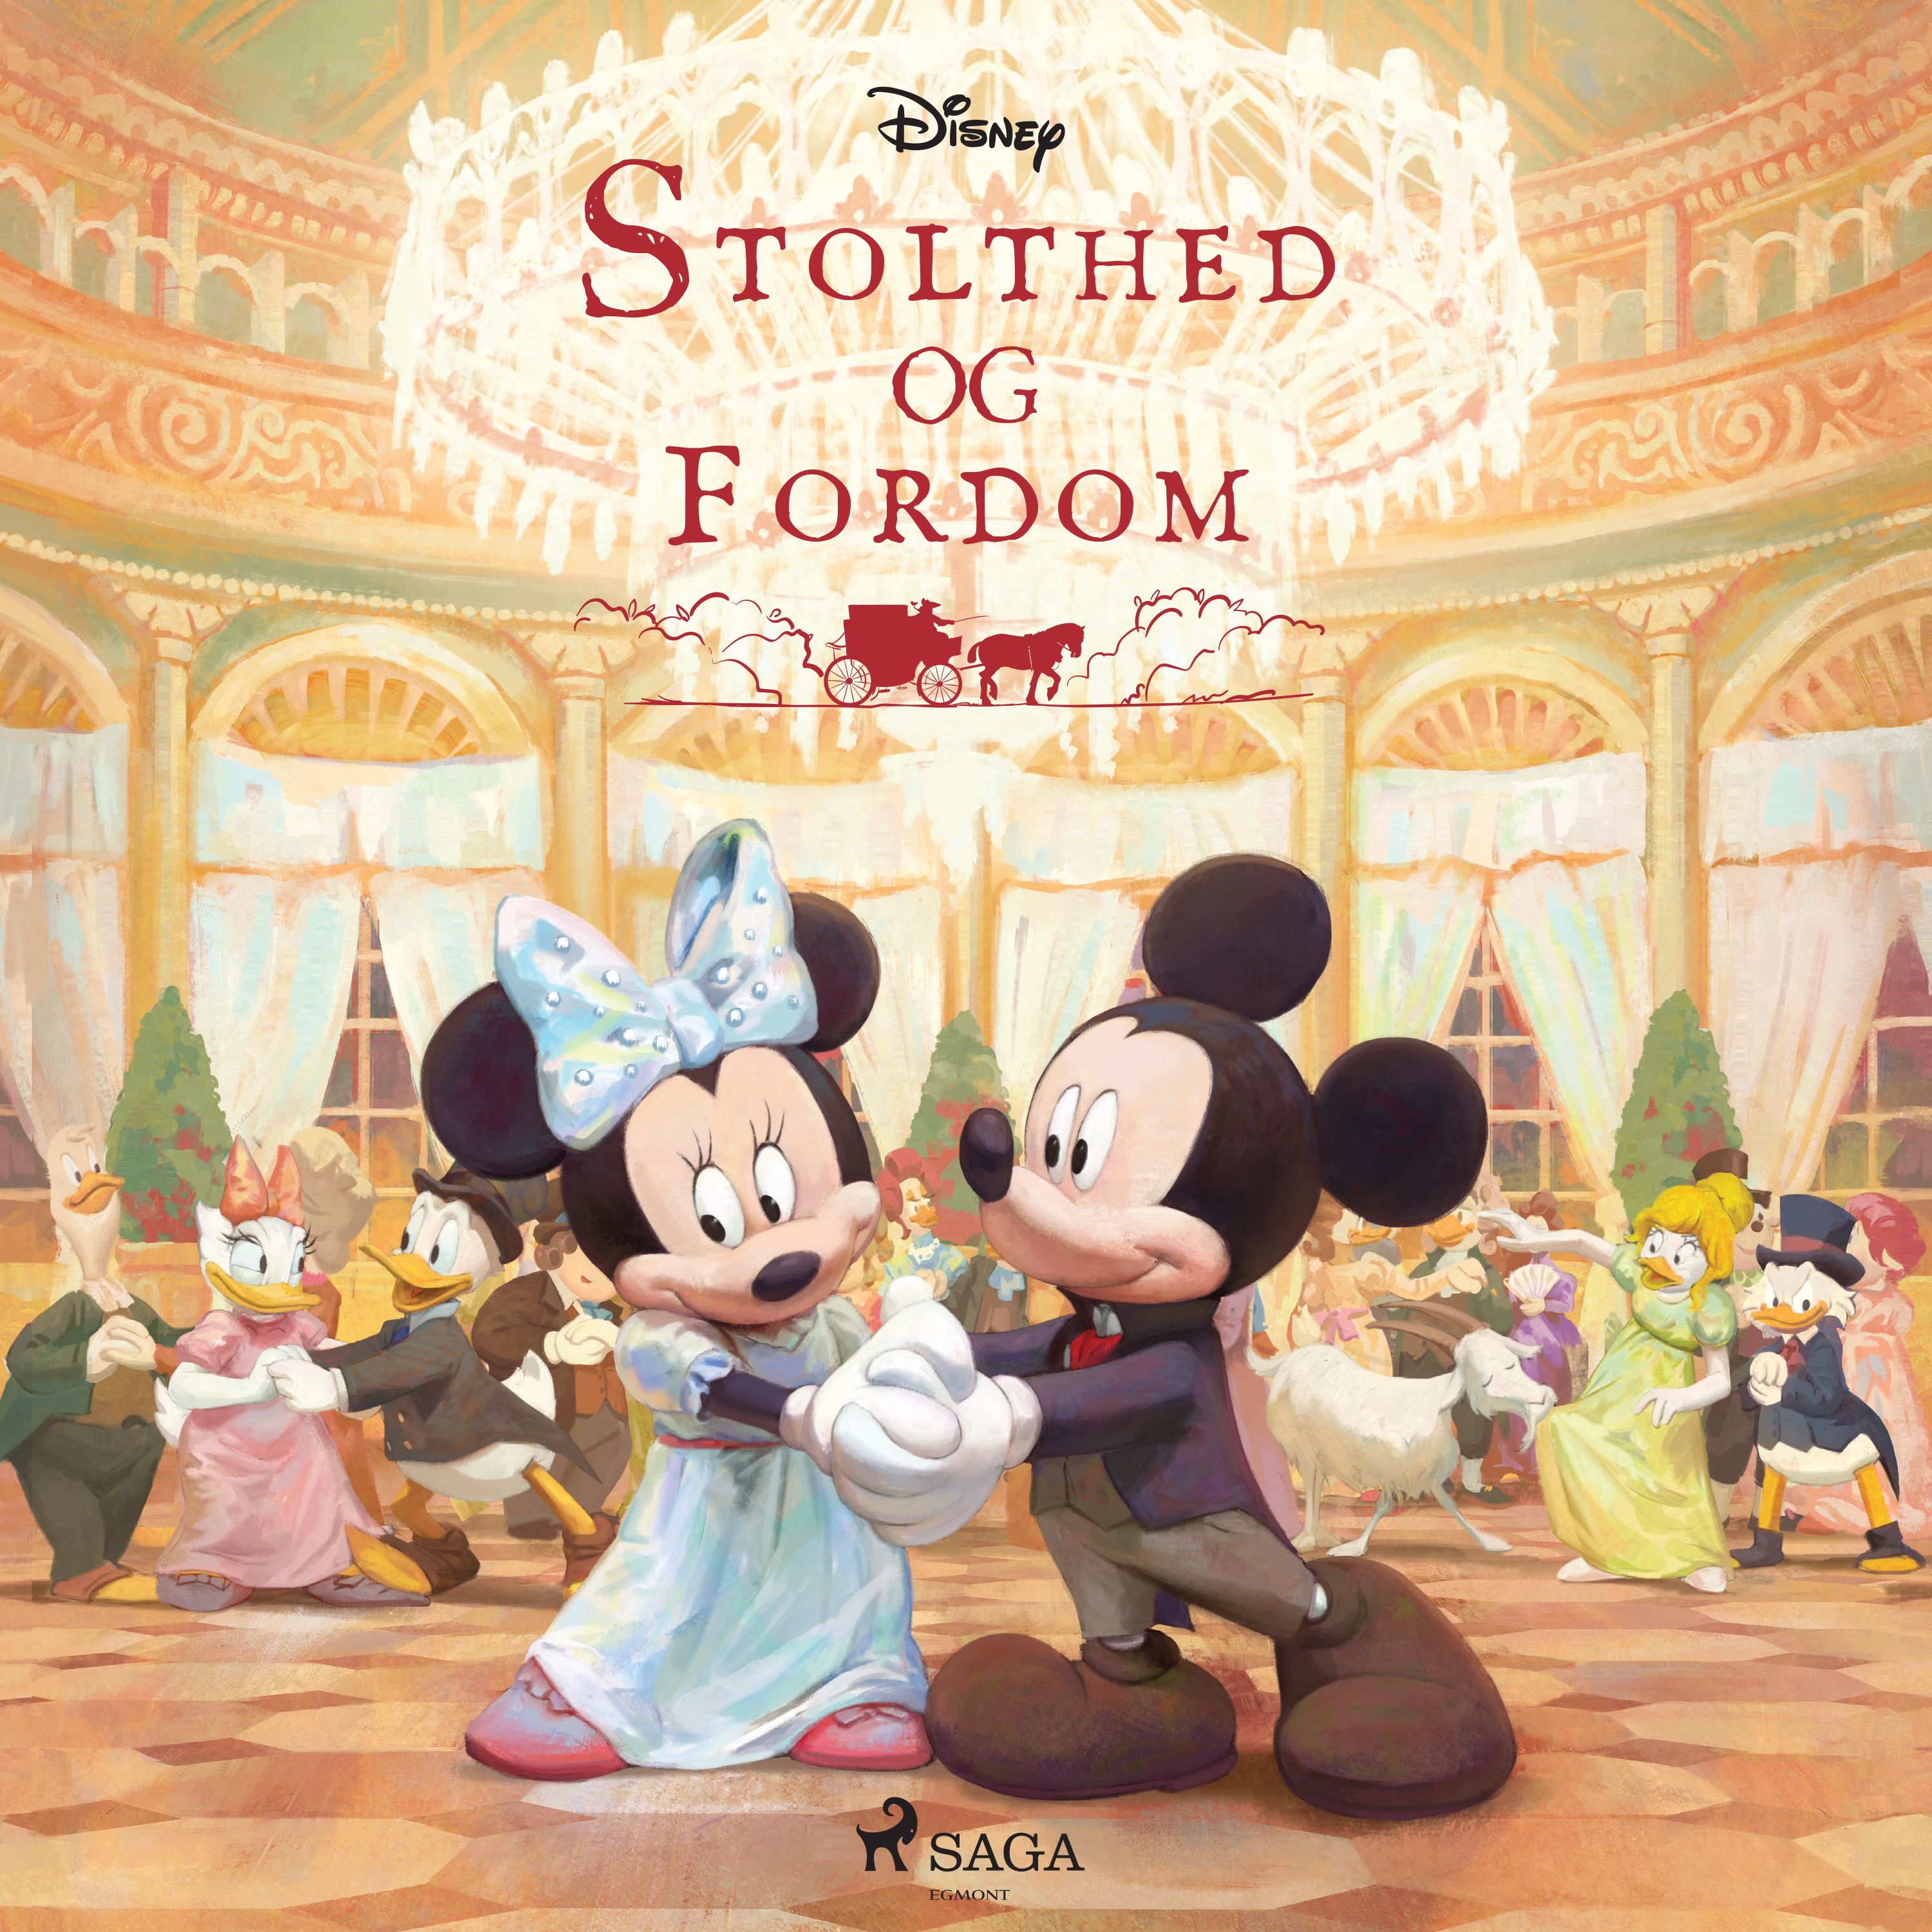 Stolthed og fordom, audiobook by Disney